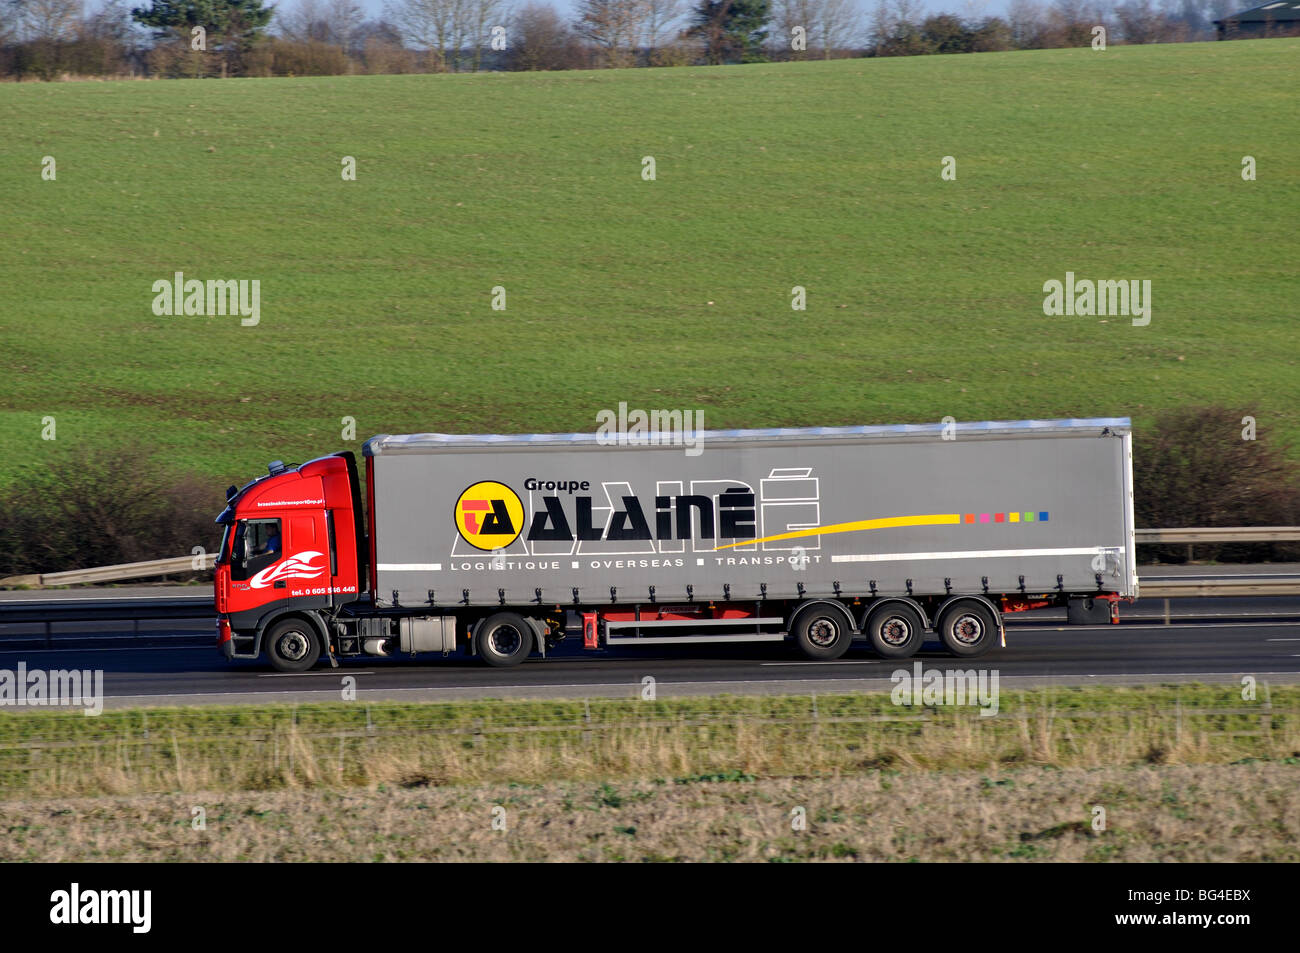 Groupe Alaine lorry on M40 motorway, Warwickshire, England, UK Stock Photo